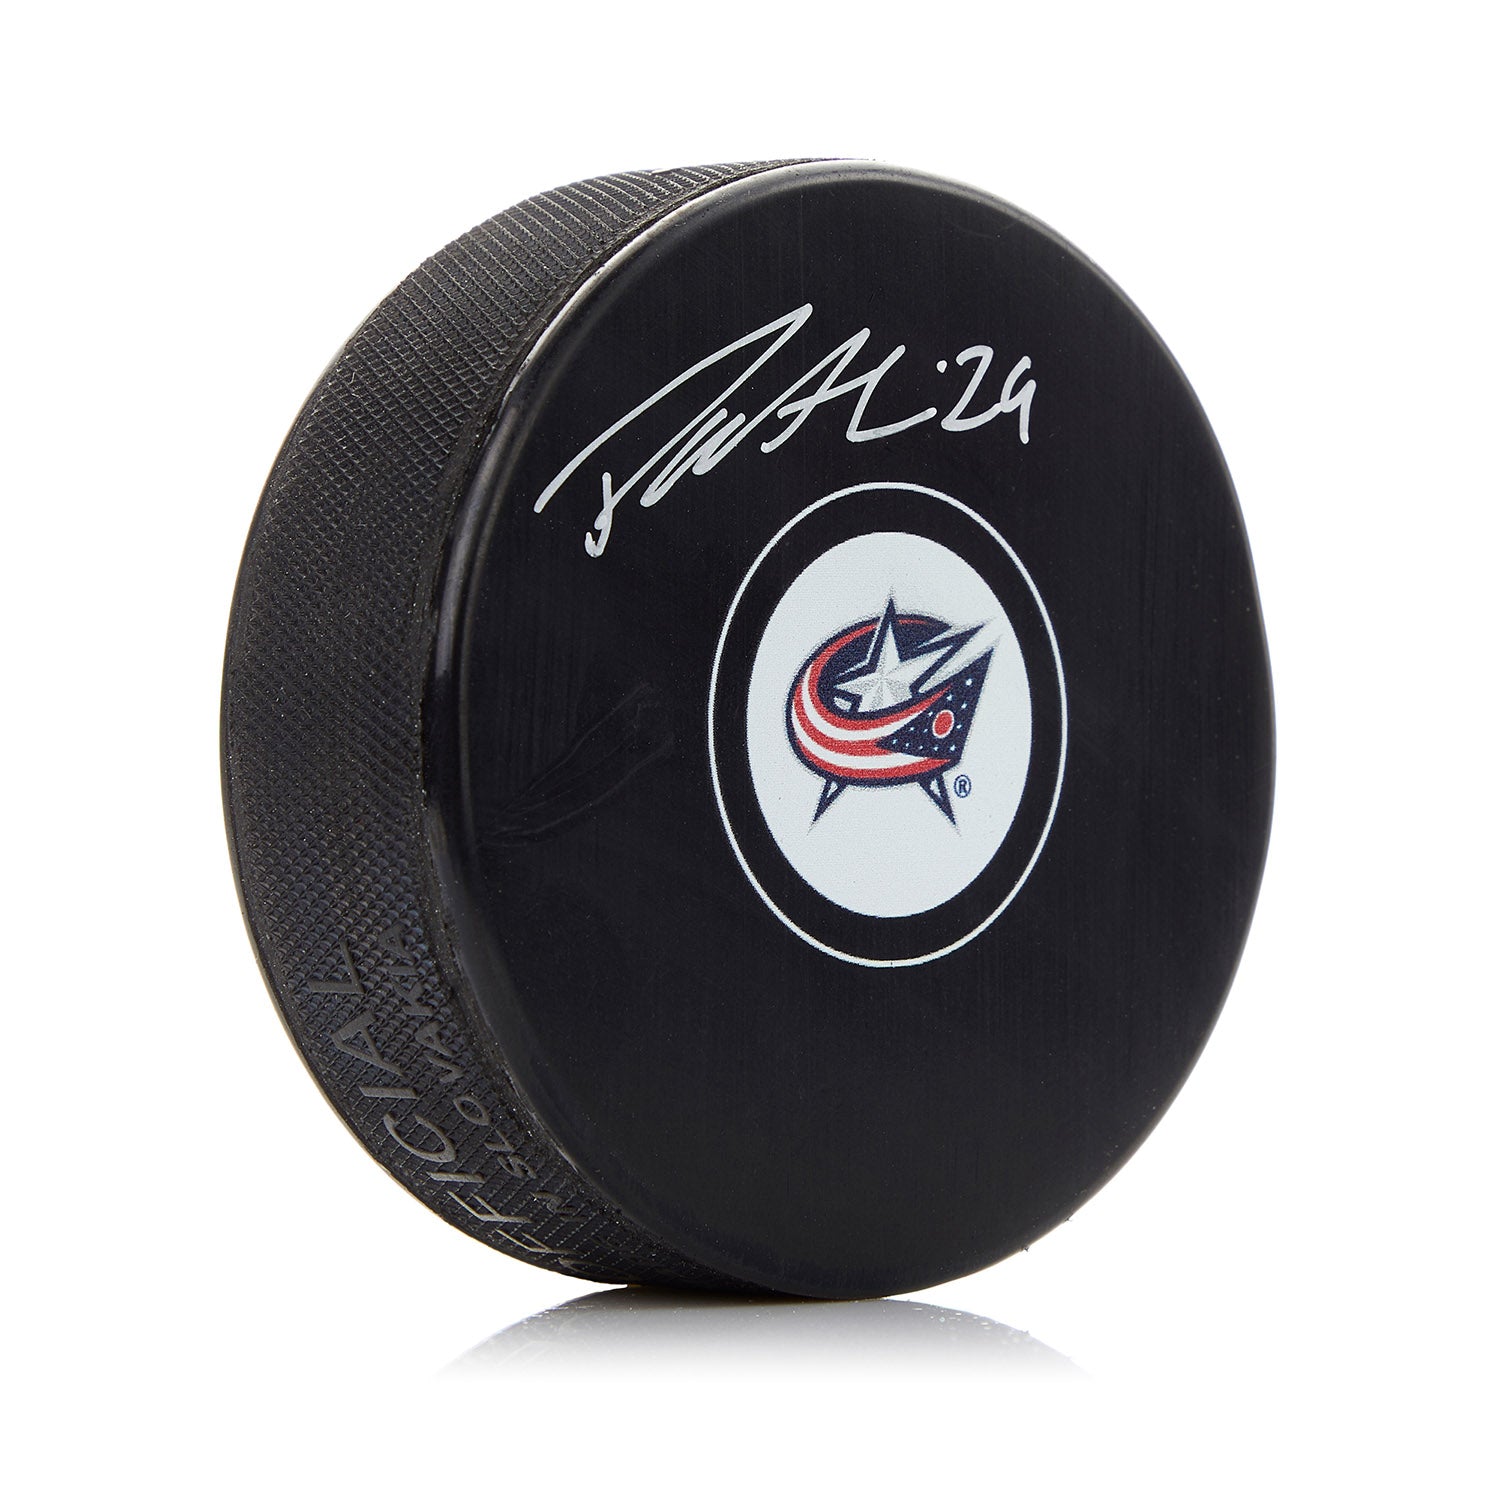 Patrik Laine Columbus Blue Jackets Autographed Hockey Puck